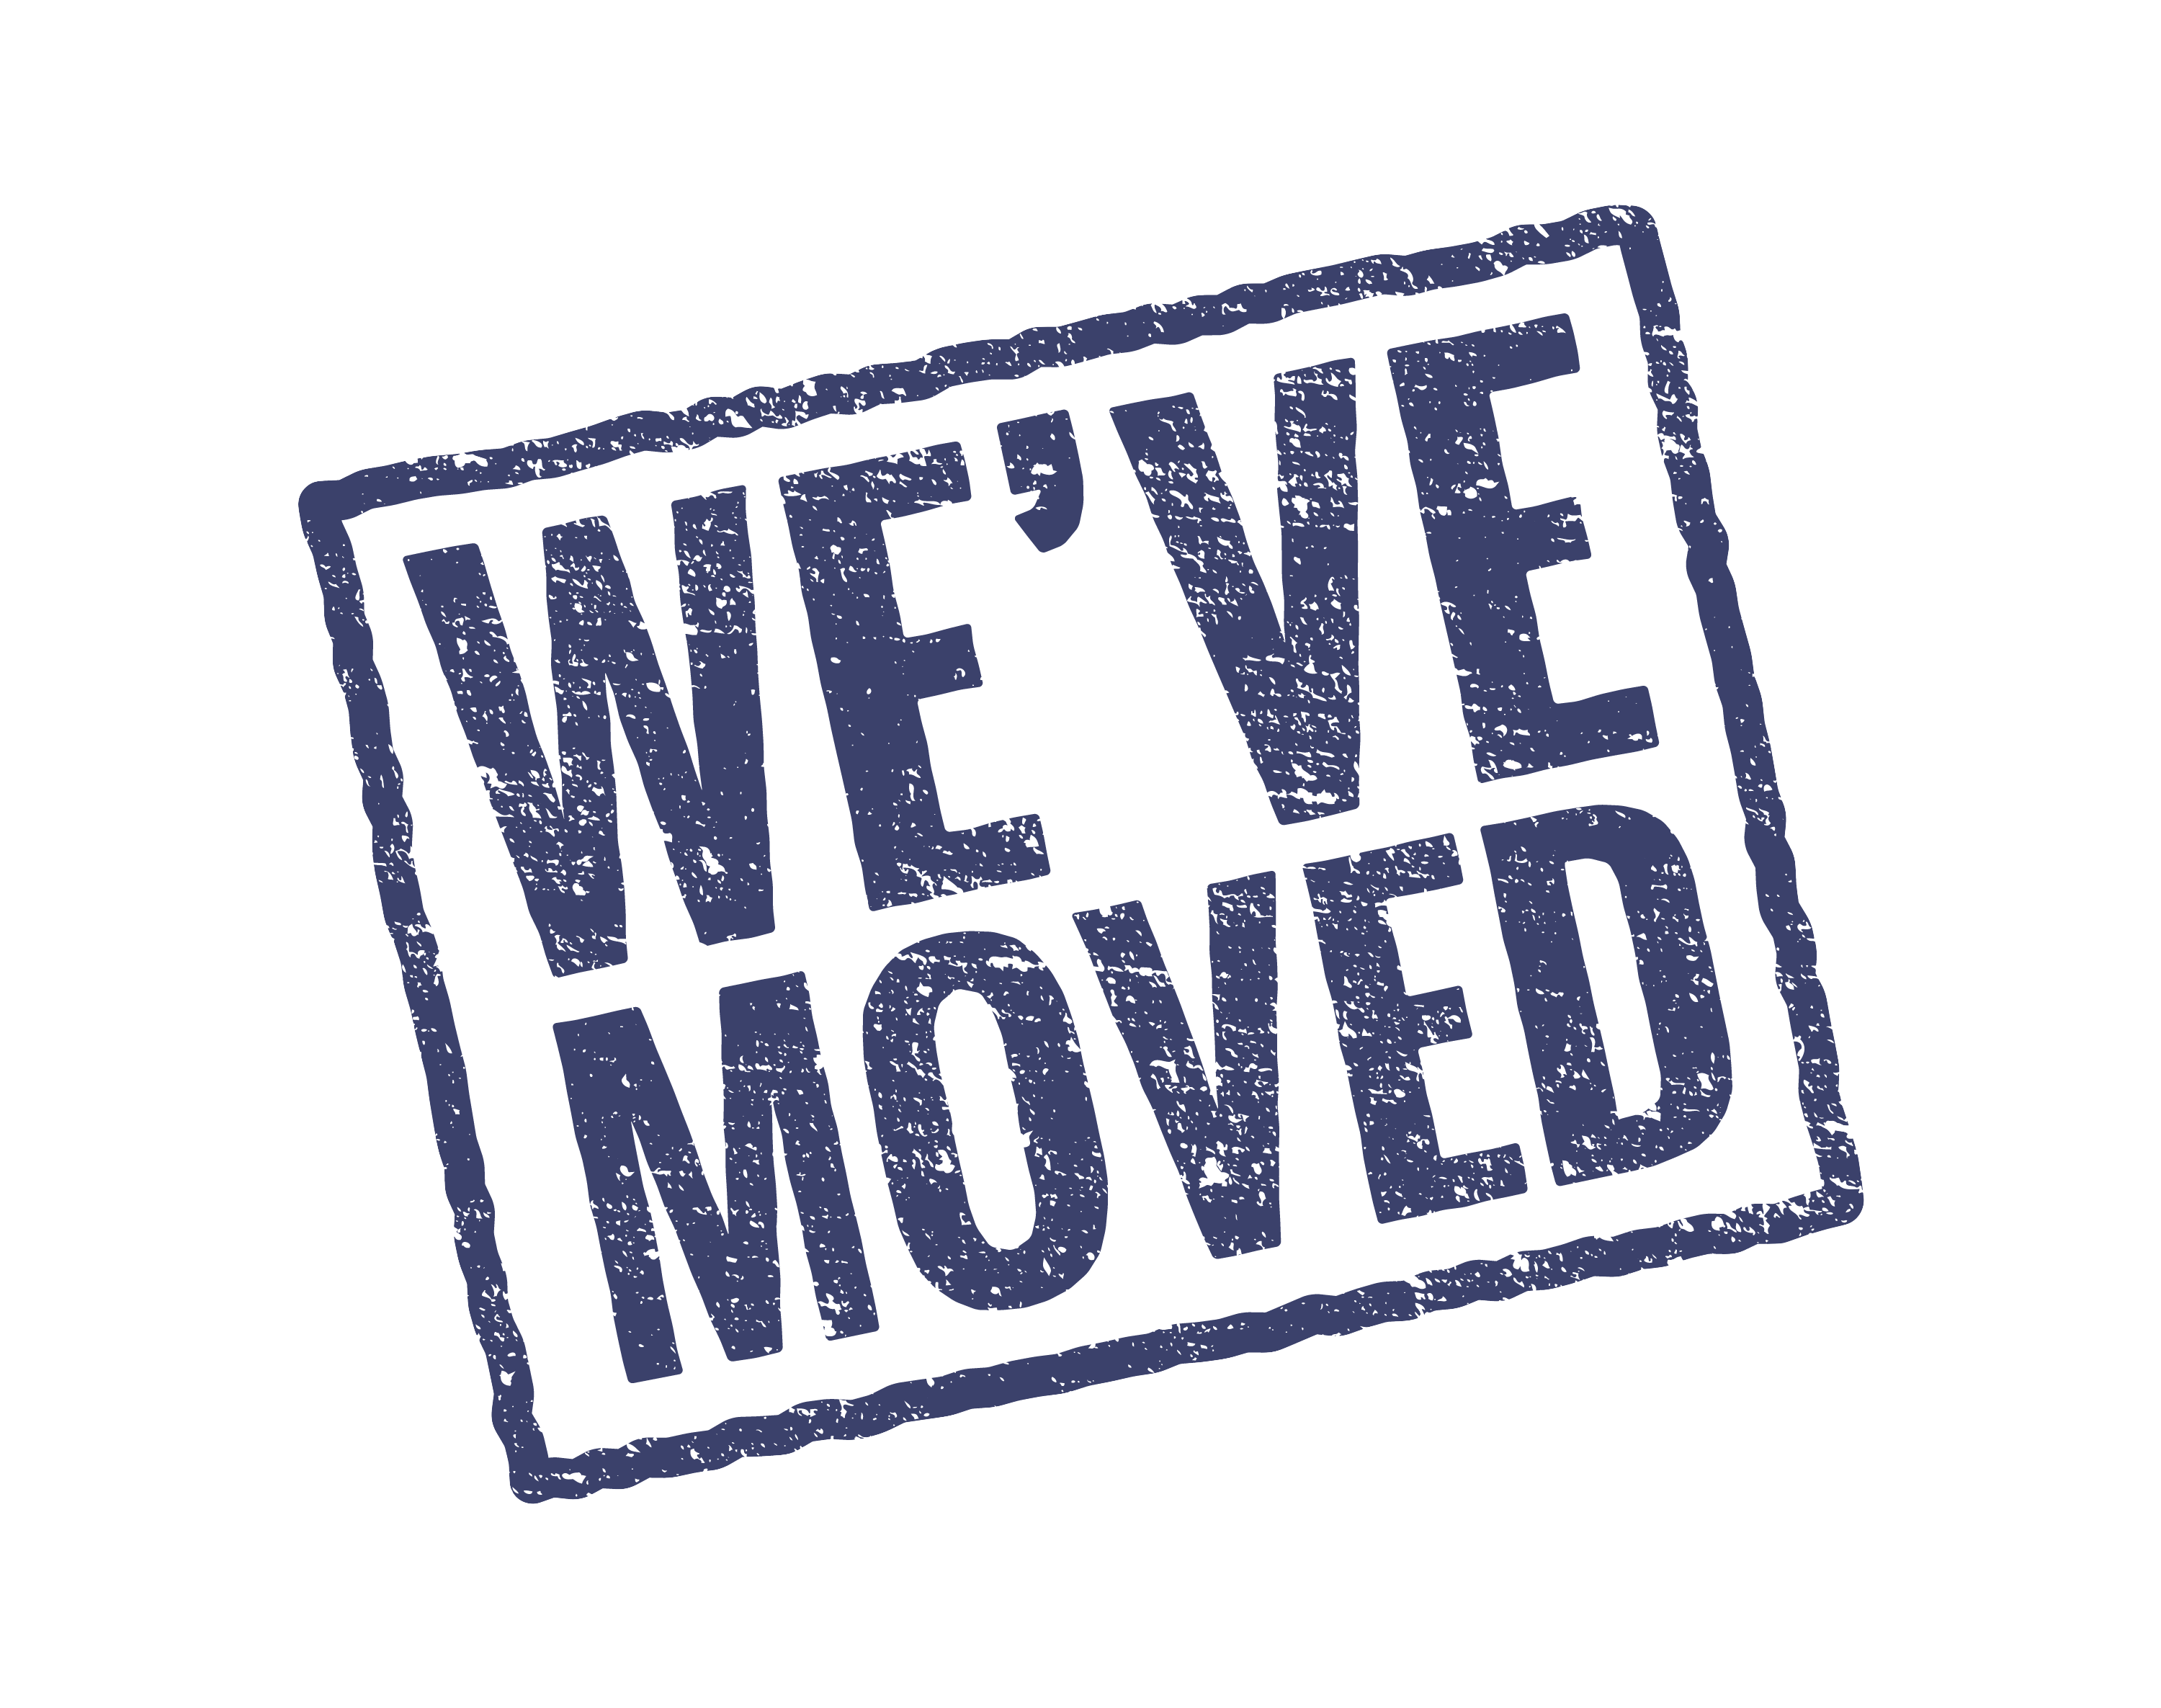 we've moved!